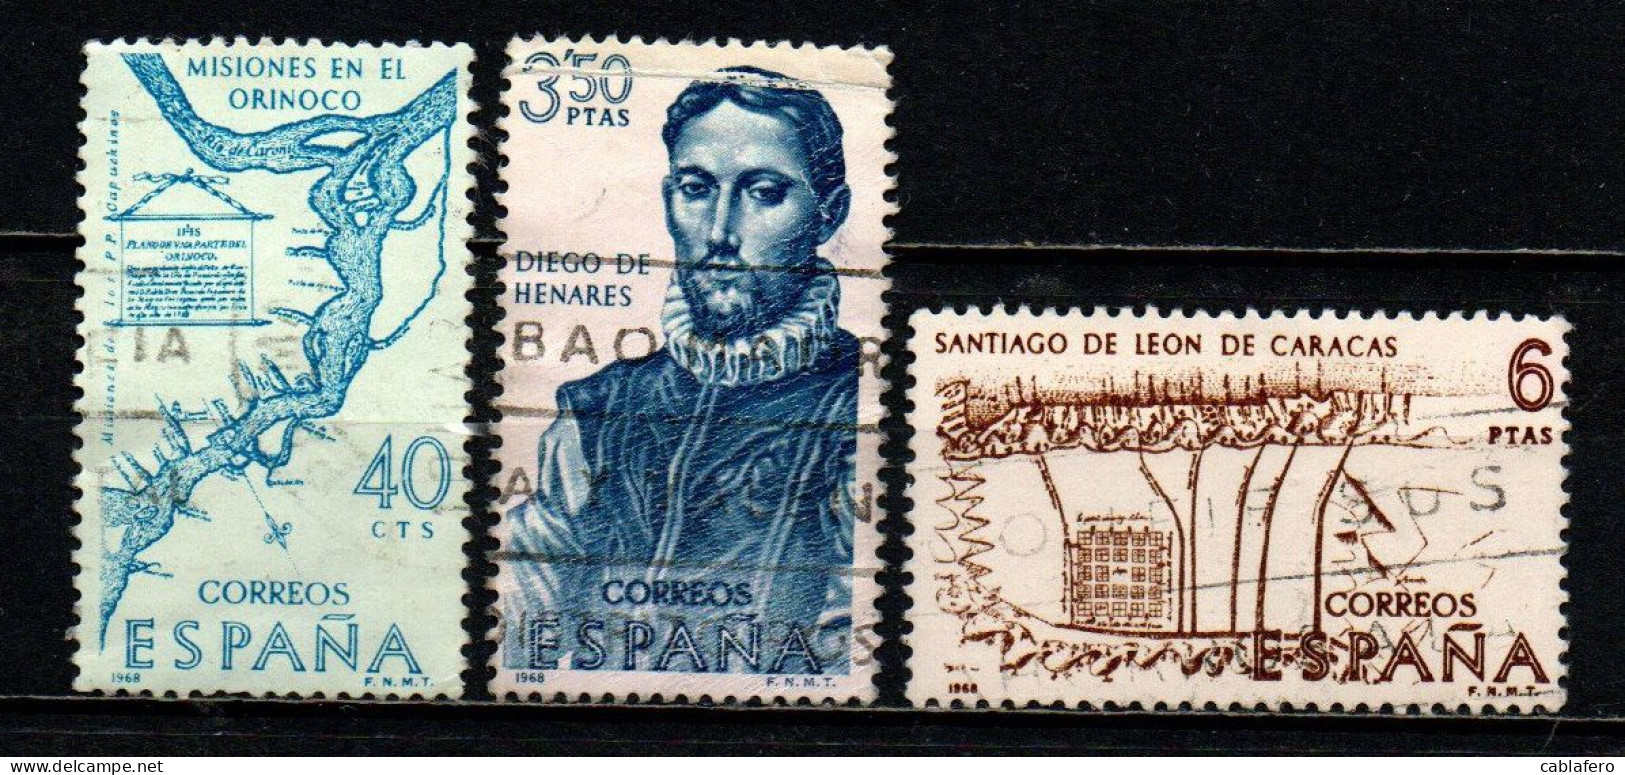 SPAGNA - 1968 - CONQUISTARORI DELL'AMERICA: DIEGO DI HENARES, CARTA DELL'ORINOCO E DI SANTIAGO- USATI - Used Stamps